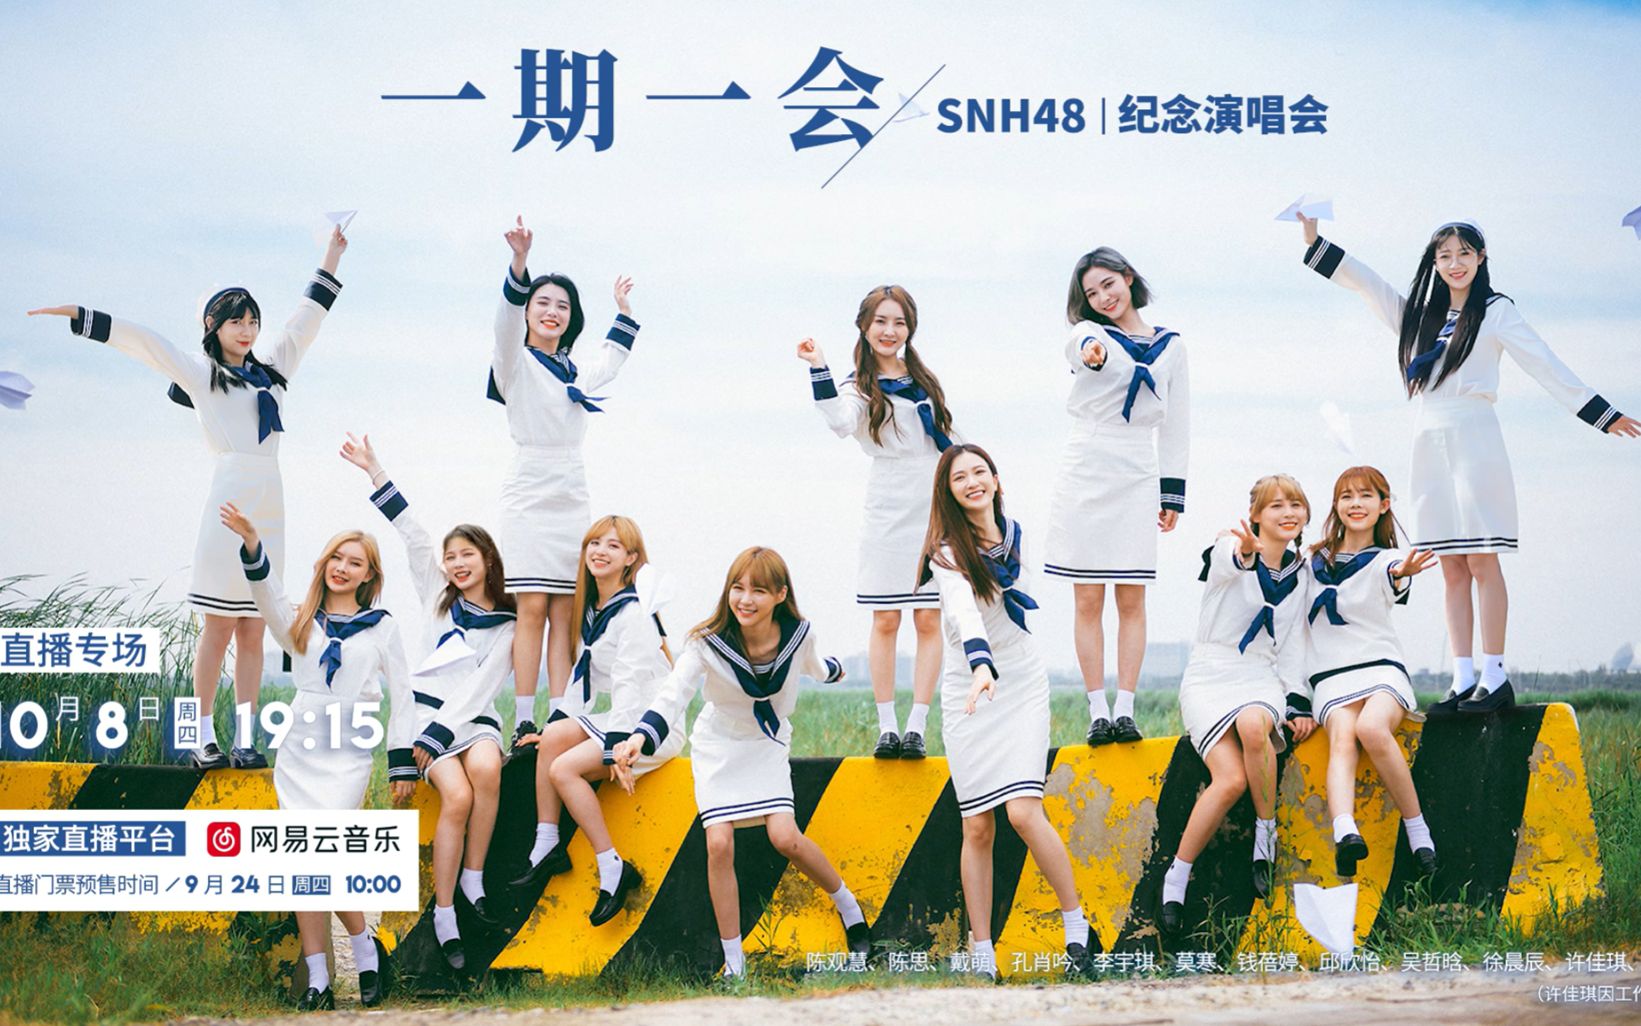 SNH48一期生:2013上海日本映画週間パーティーに出演(2-1) | snh48.me